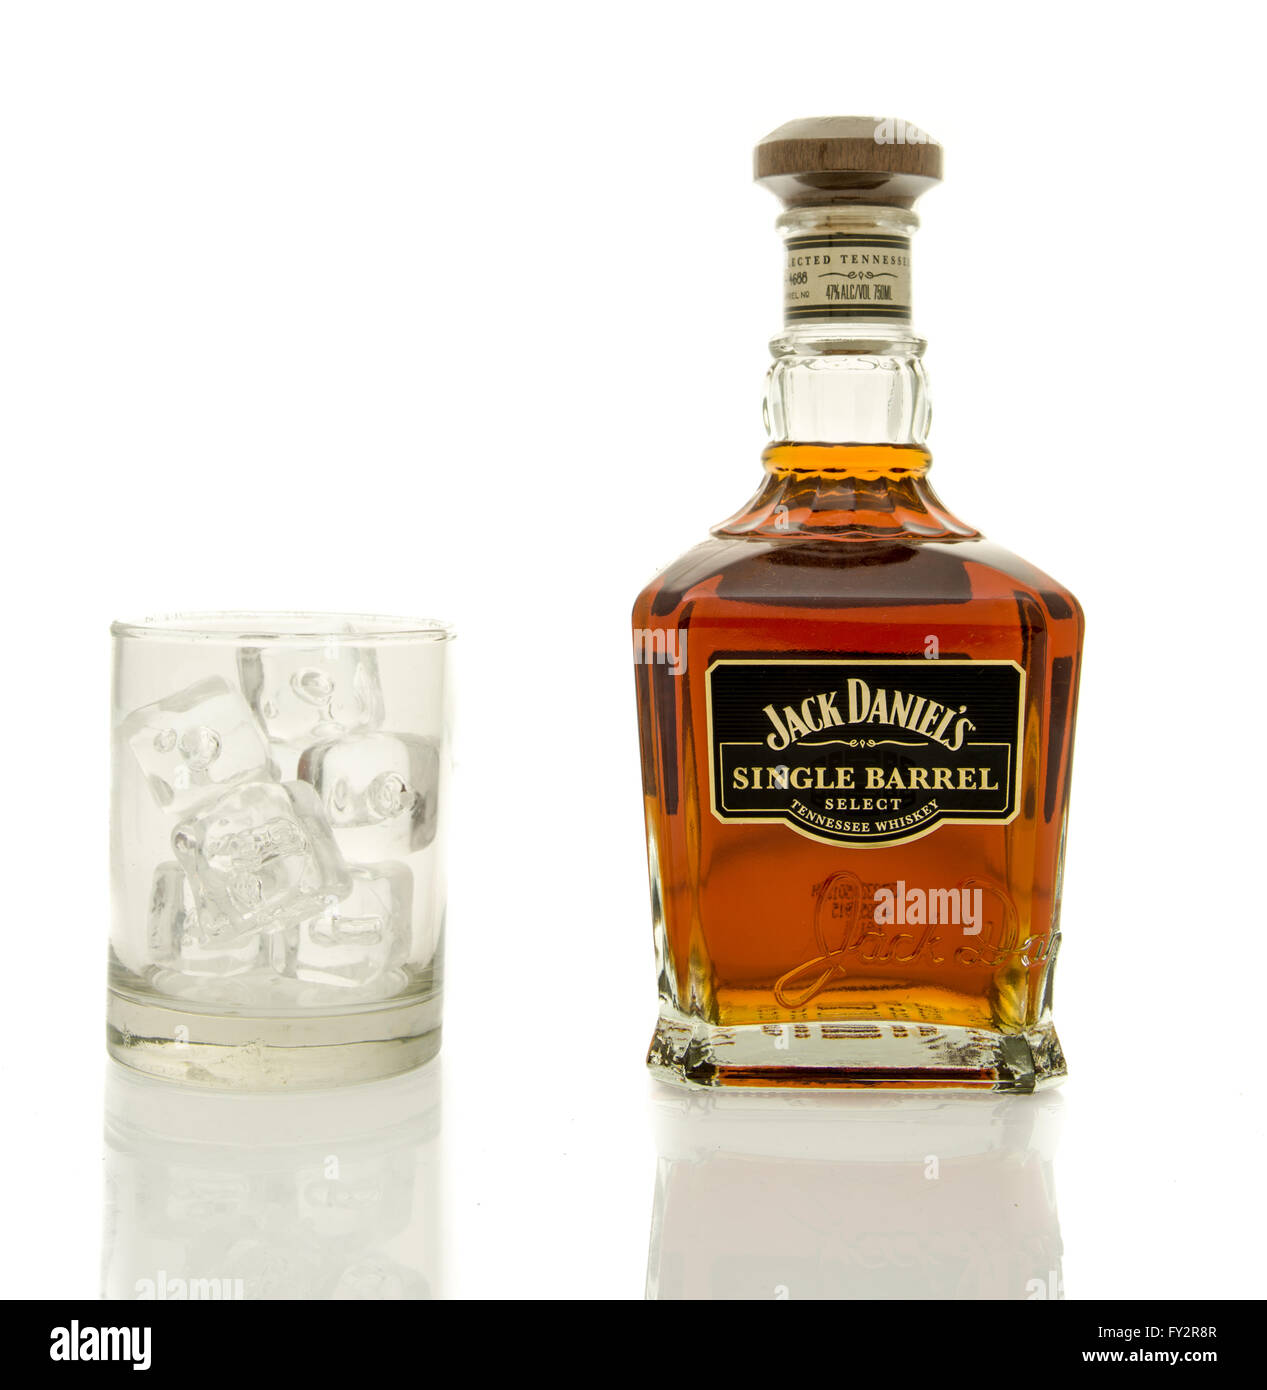 Winneconne, WI - 19 mars 2016 : une bouteille de Jack Daniel's Single Barrel whisky avec un verre de glace. Banque D'Images